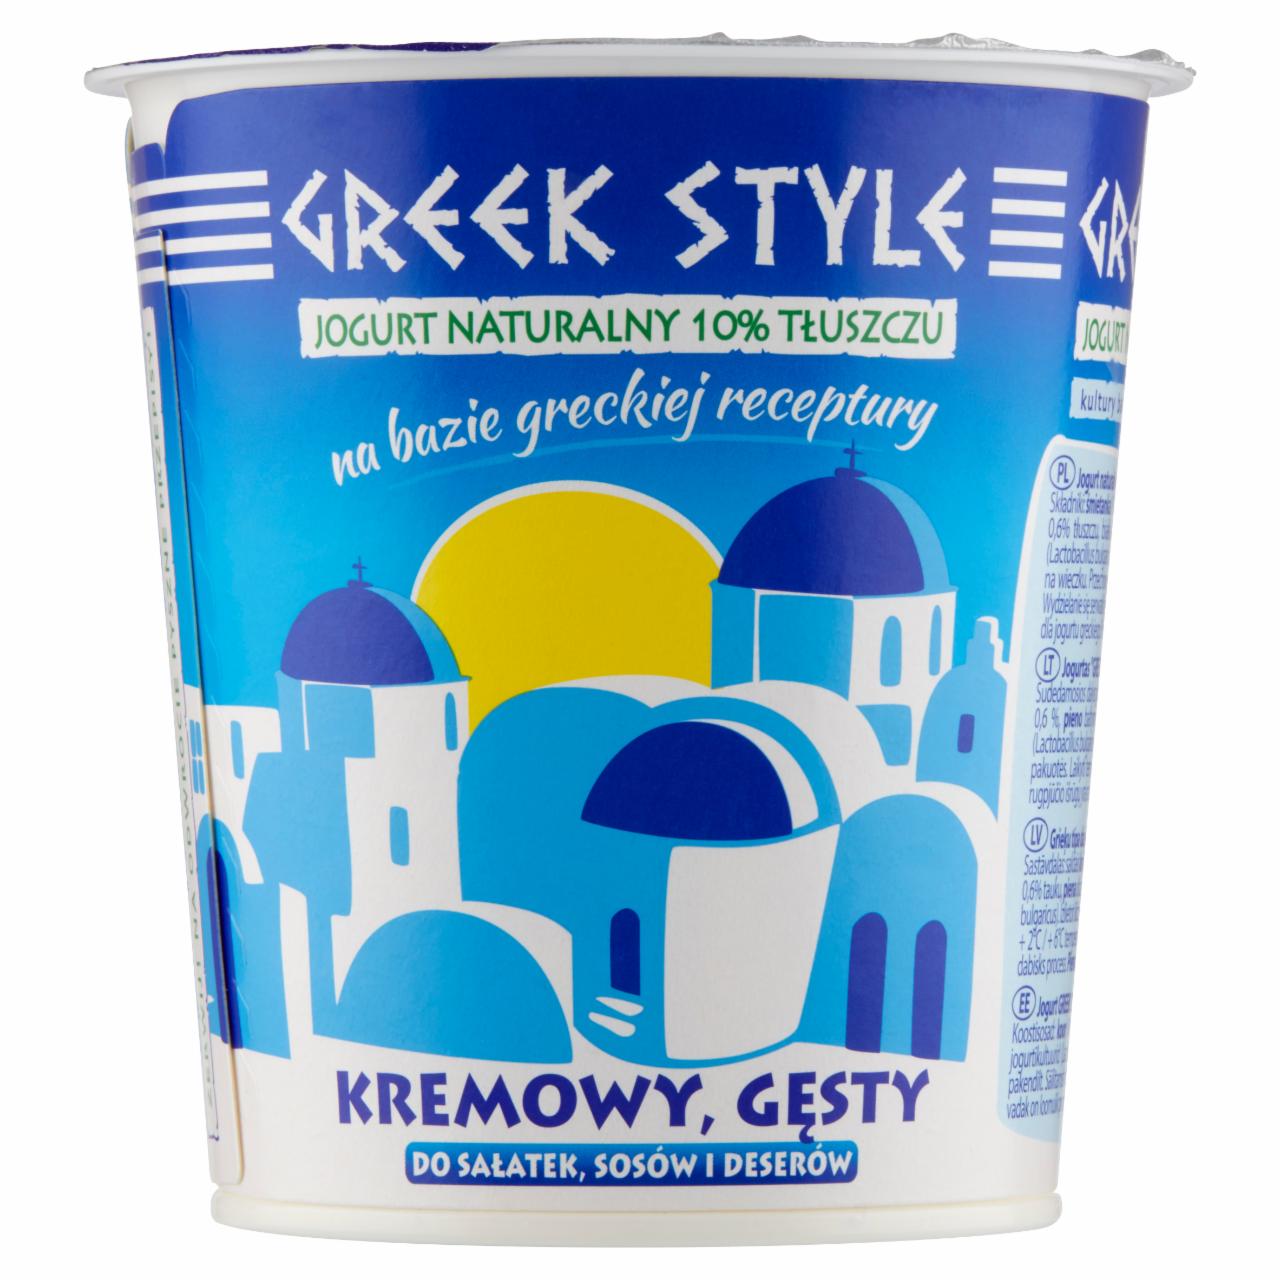 Zdjęcia - Greek Style Naturalny jogurt gęsty 340 g